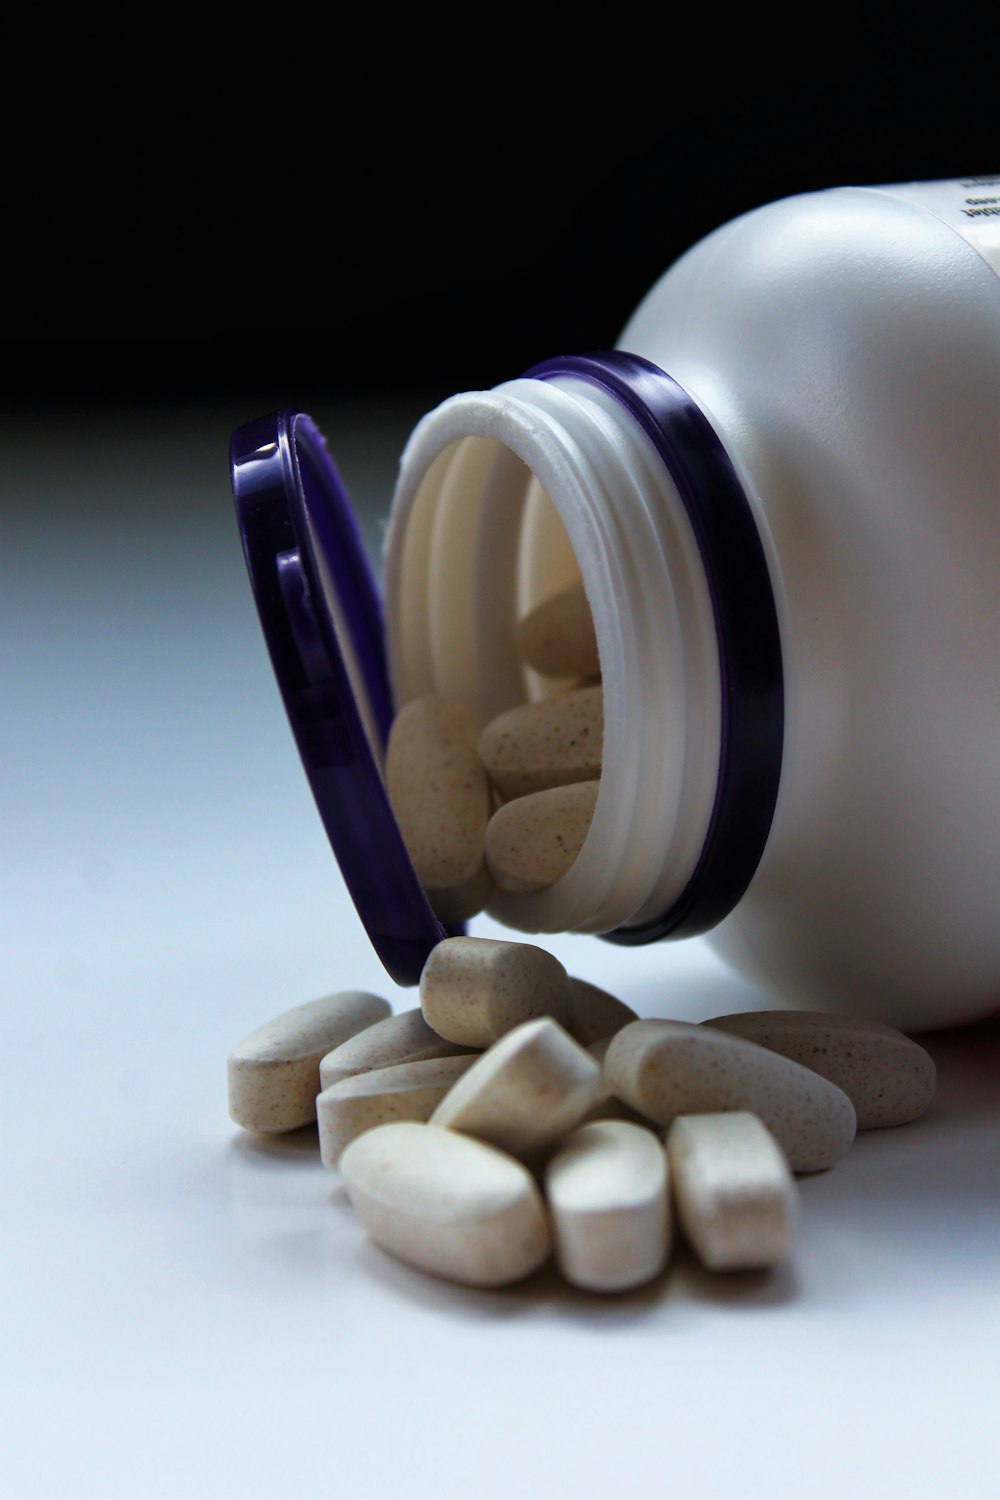 píldoras de medicamentos blancas ovaladas